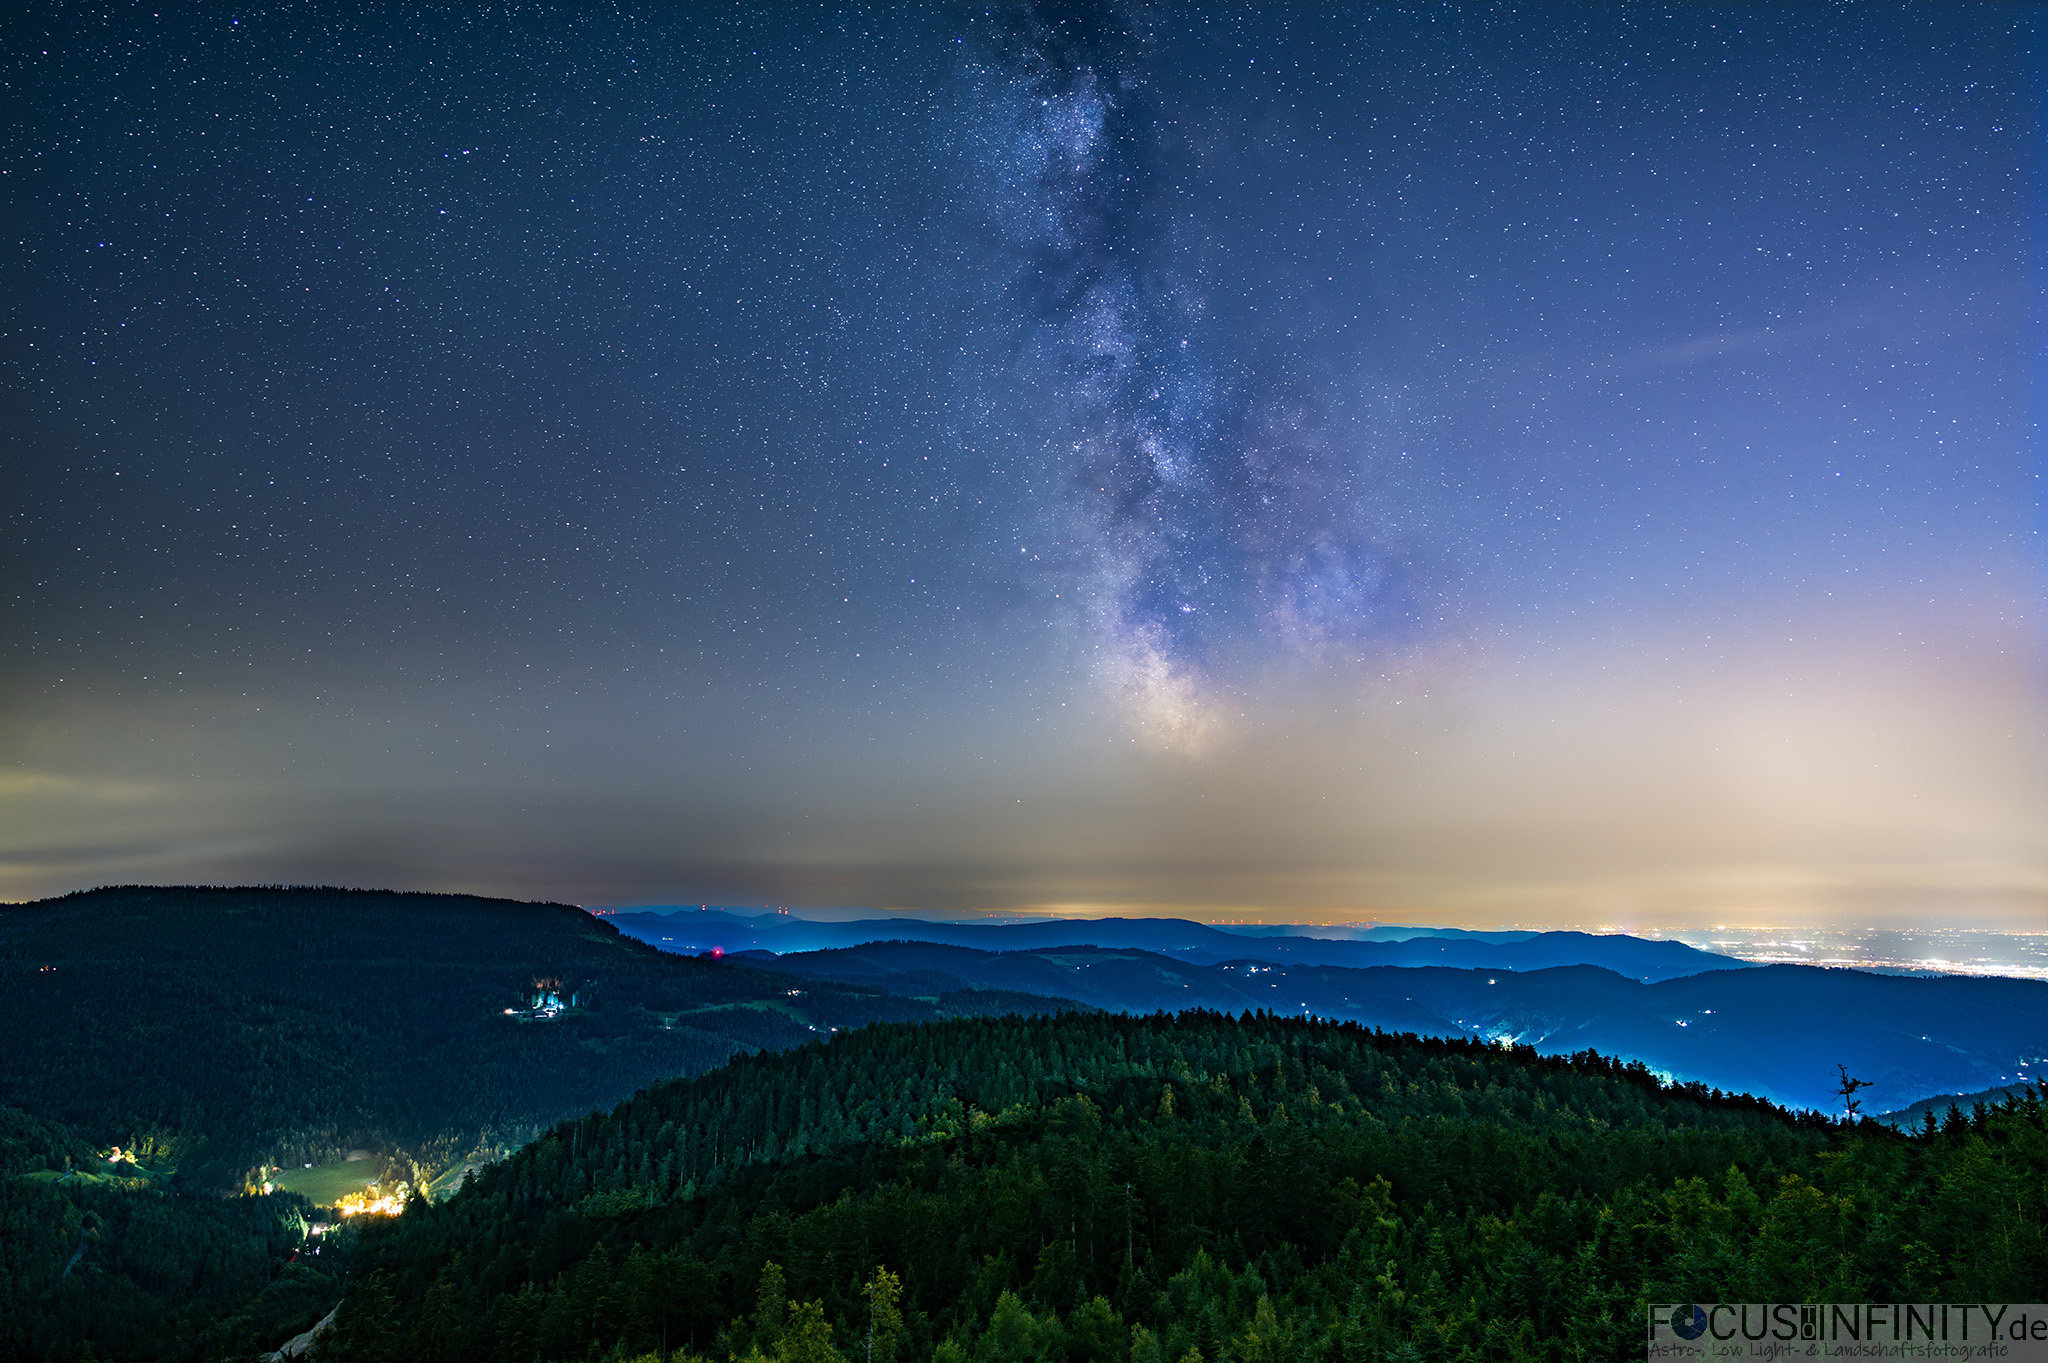 Milchstraße Im Jahresverlauf Wann Am Besten In Deutschland Fotografieren Focustoinfinityde